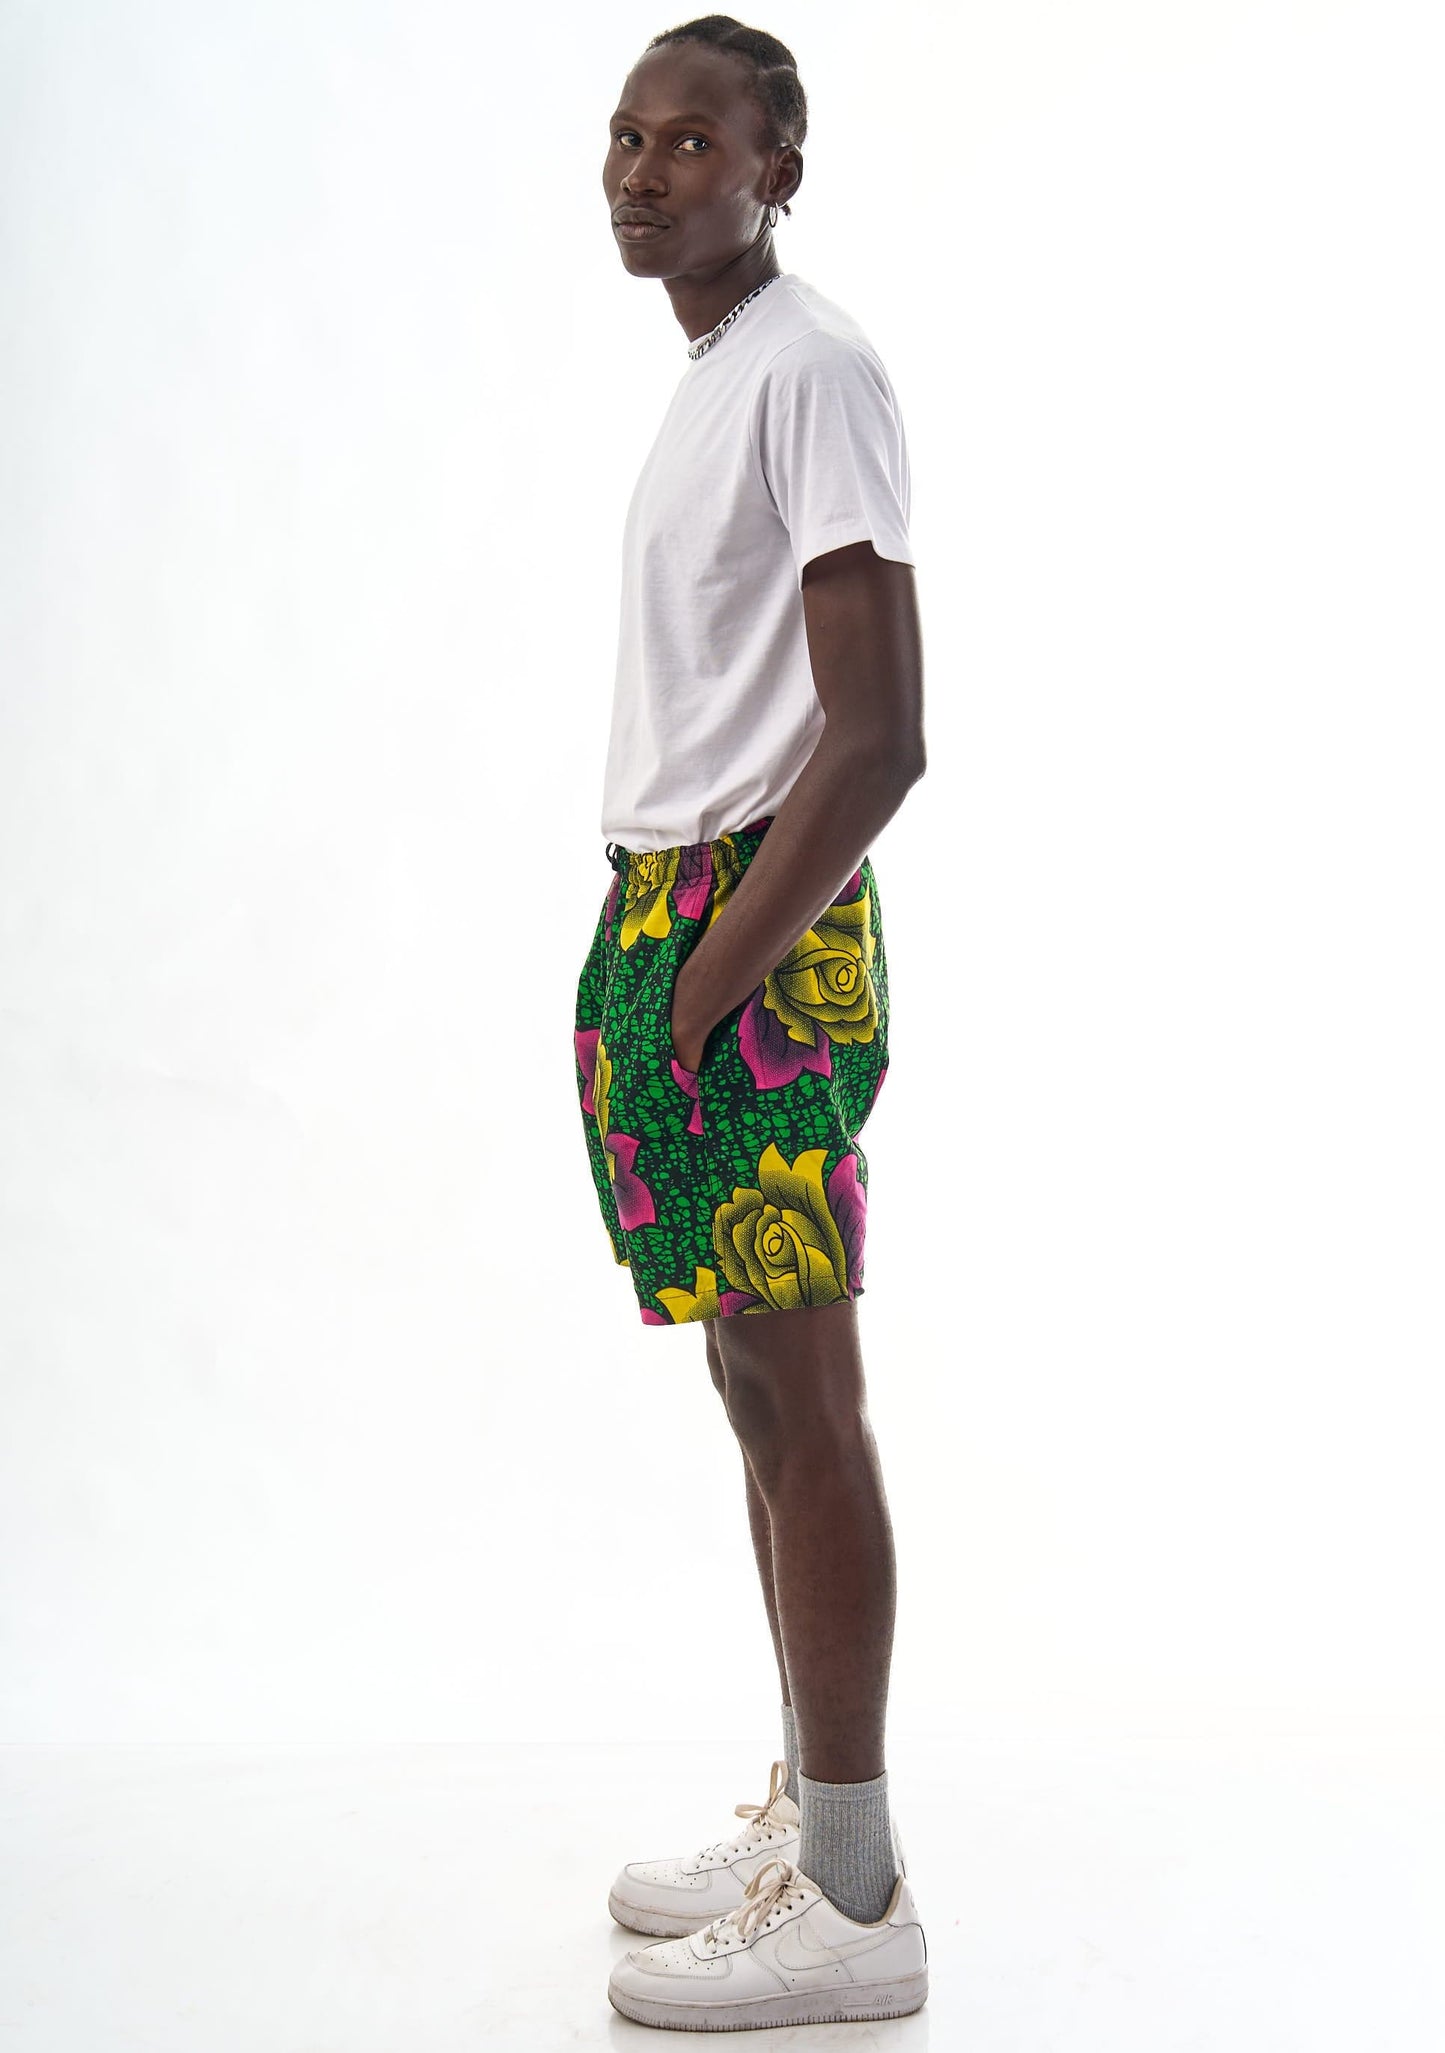 YEVU Men - Trousers Shorts - Yellow Rose